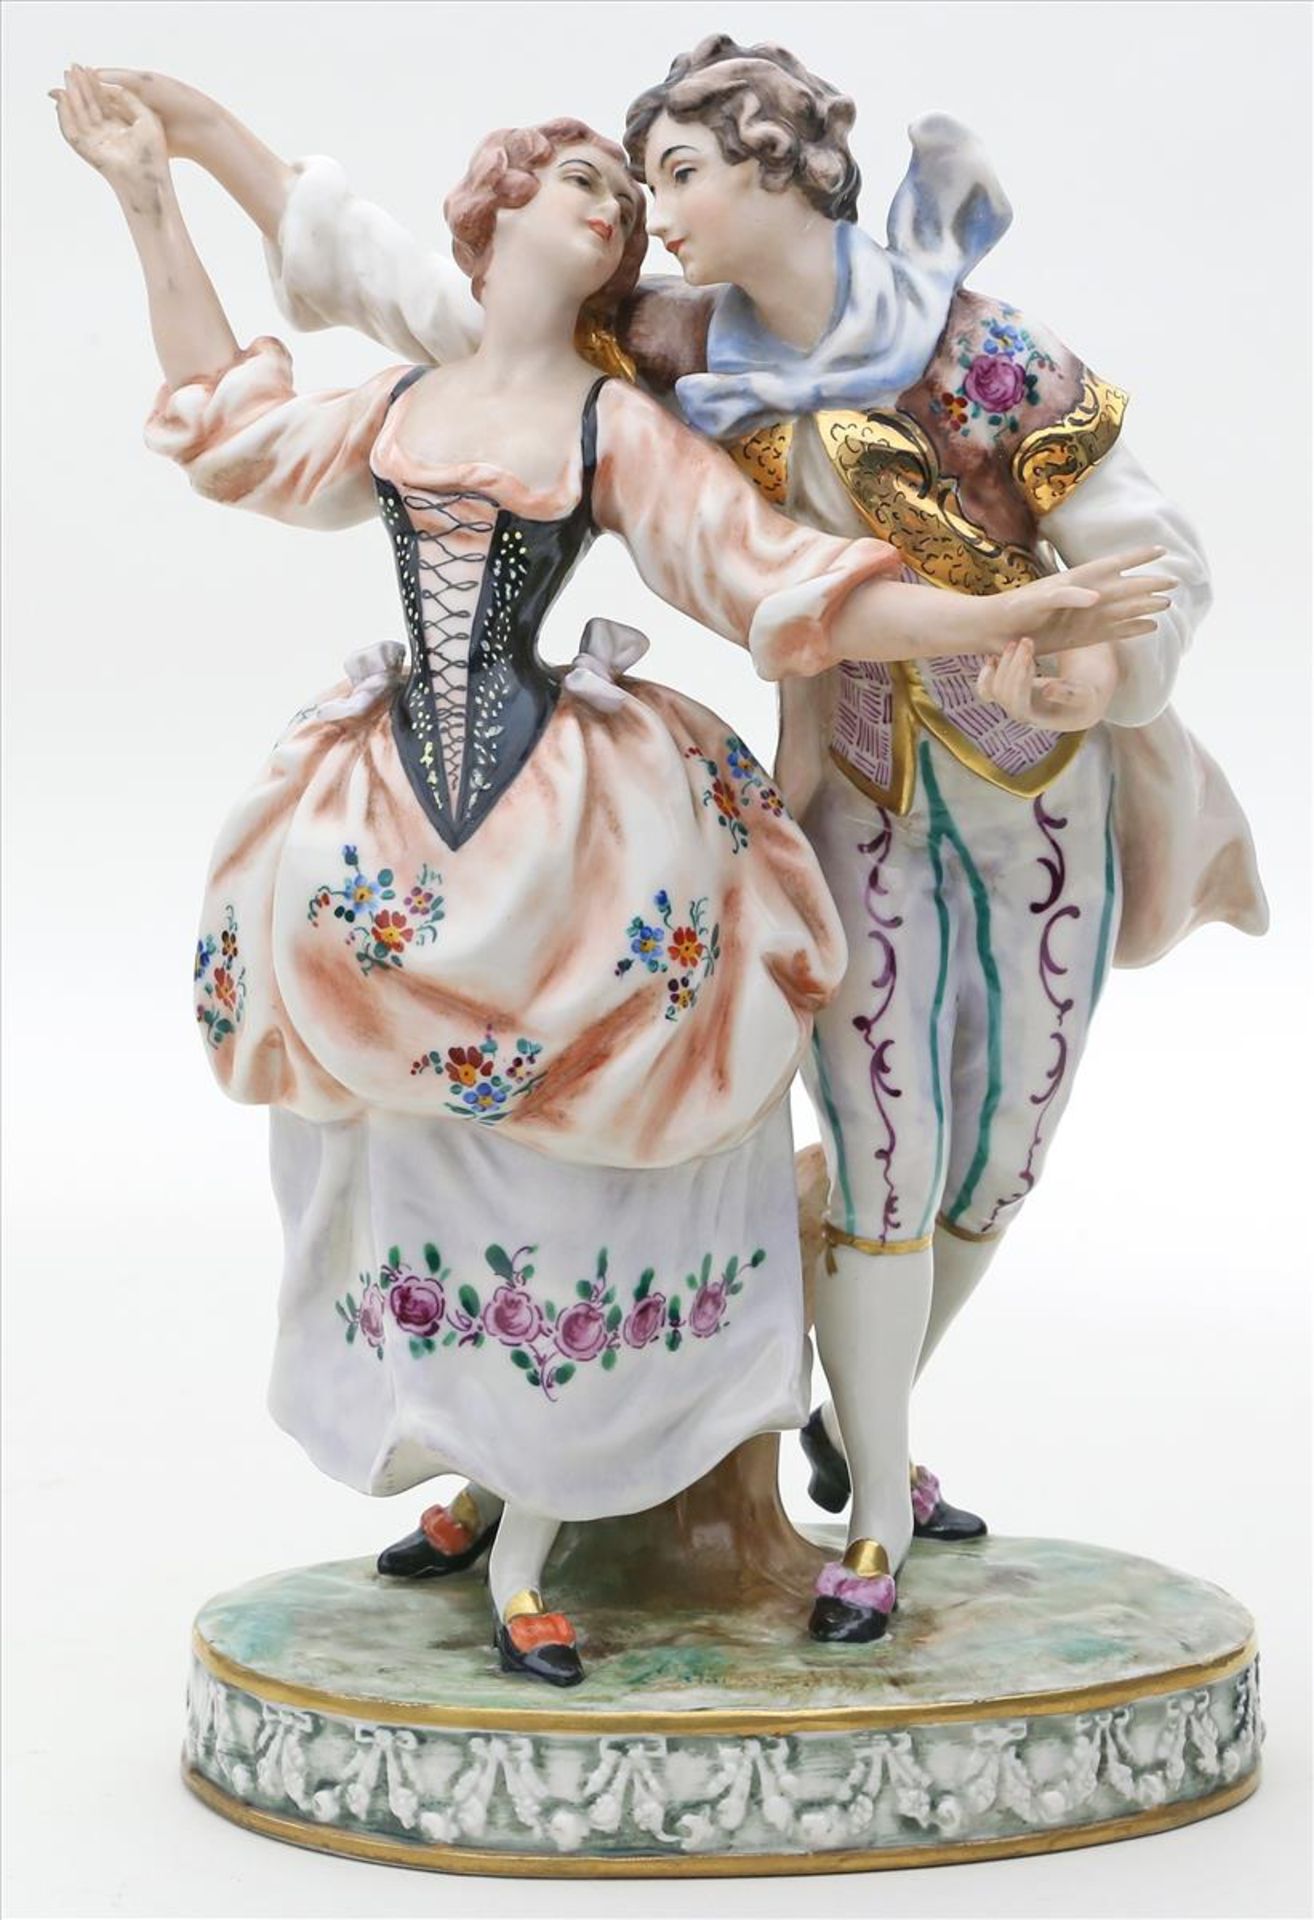 Skulpturengruppe eines tanzenden Paares.Porzellan. Bunt bemalt und goldstaffiert. Teils berieben und